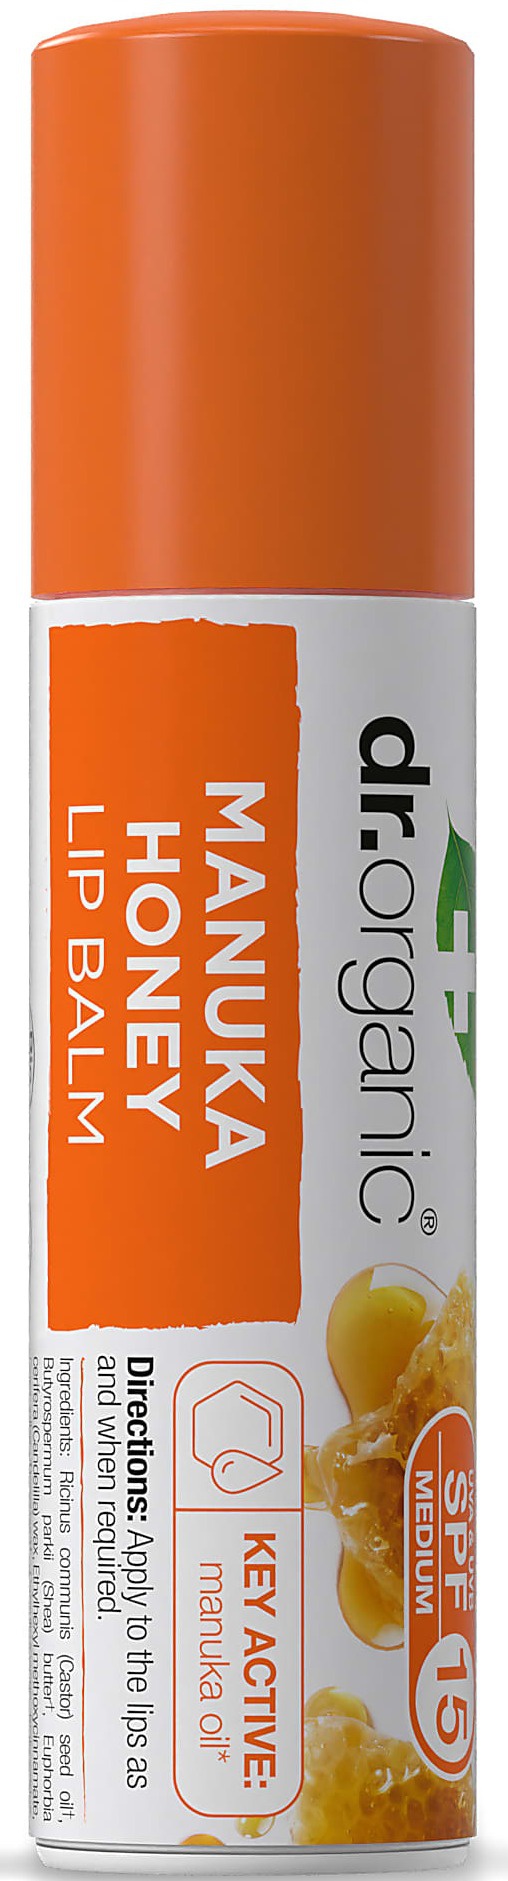 Dr Organic Manuka Honey Lip Balm